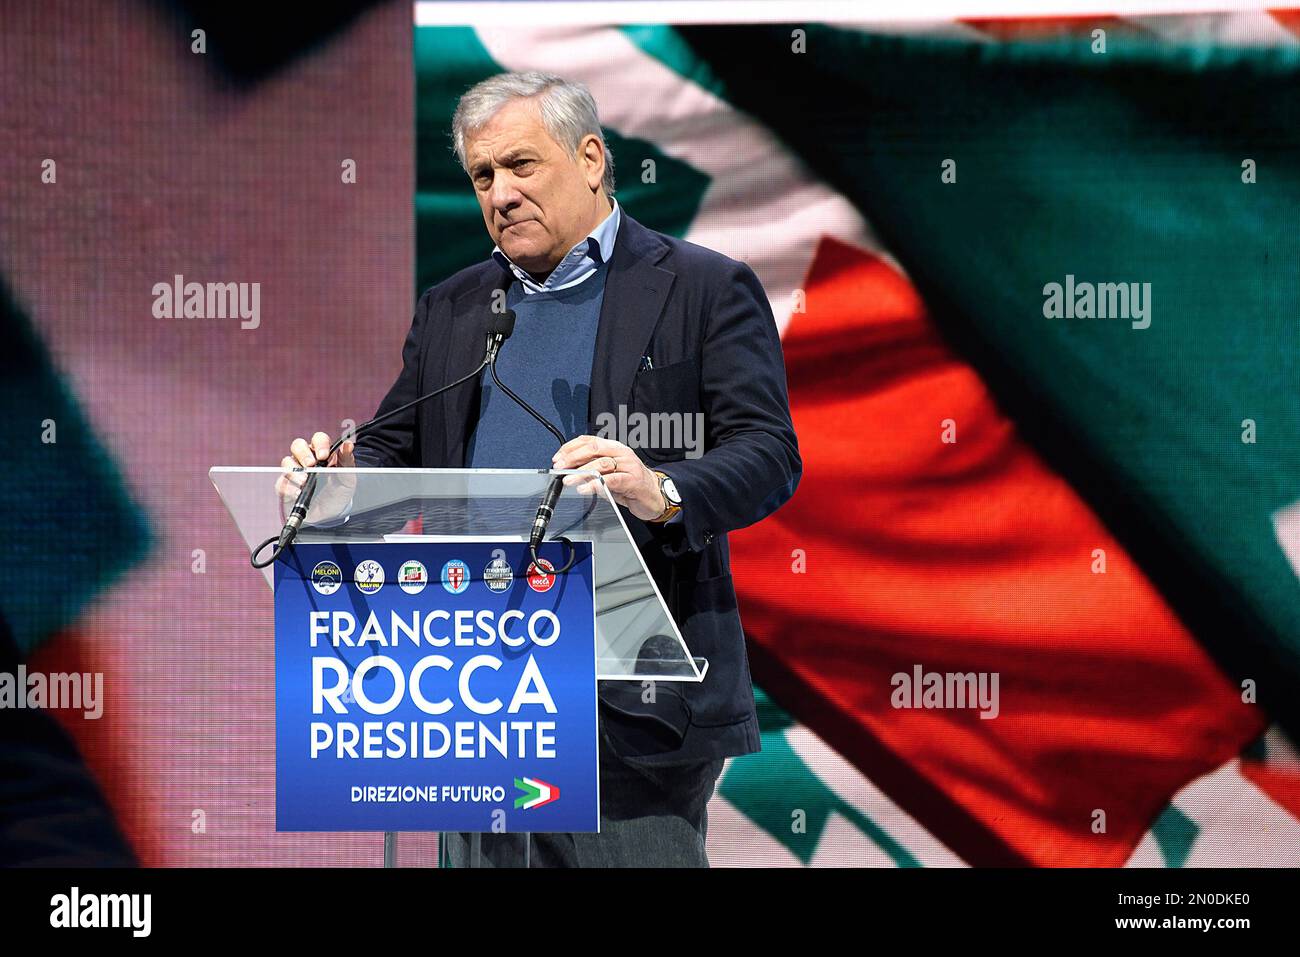 Antonio Tajani, Außenminister, spricht während der Veranstaltung zur Unterstützung des Kandidaten der rechten Koalition für die Präsidentschaft der Region Latium, Francesco Rocca. Am 12. Und 13. Februar 2023 stimmen wir für die Wahl des Präsidenten der Region Latium und des Regionalrats. Stockfoto